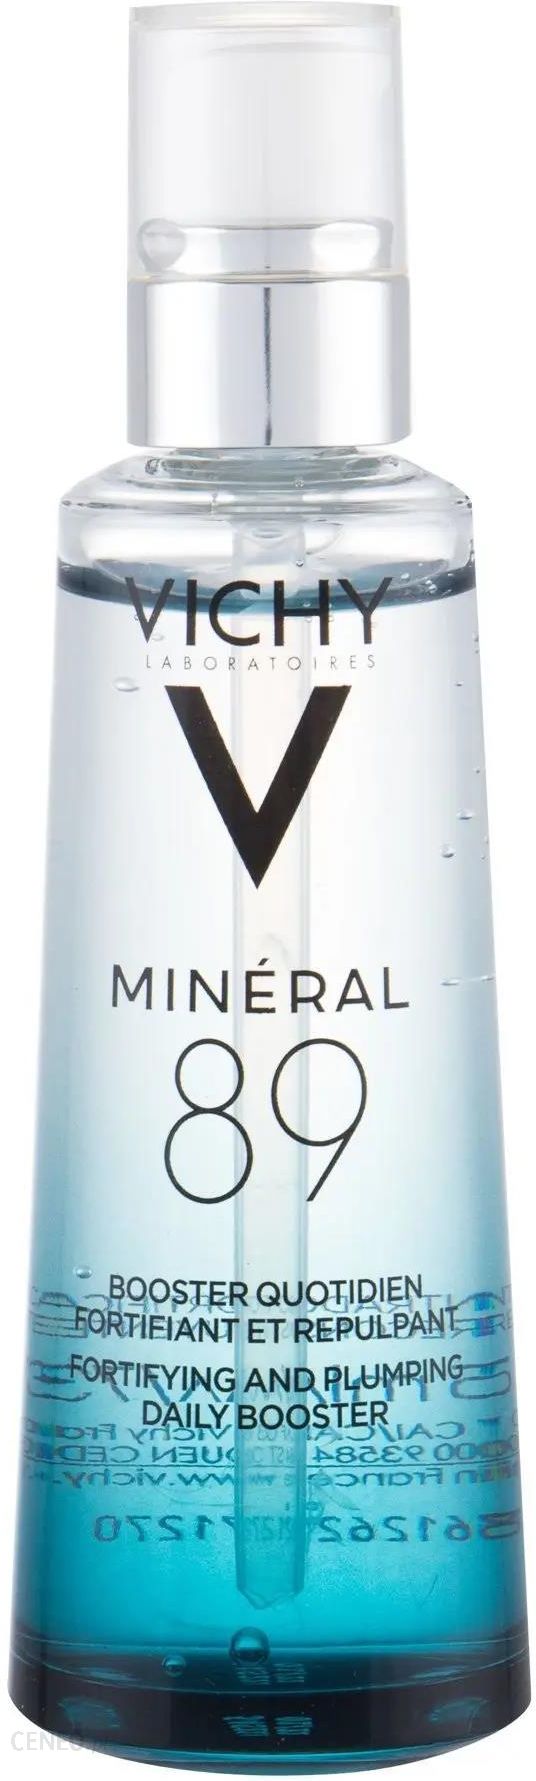 Vichy Minéral 89 wzmacniający i wypełniający hialuronowy booster 75 ml